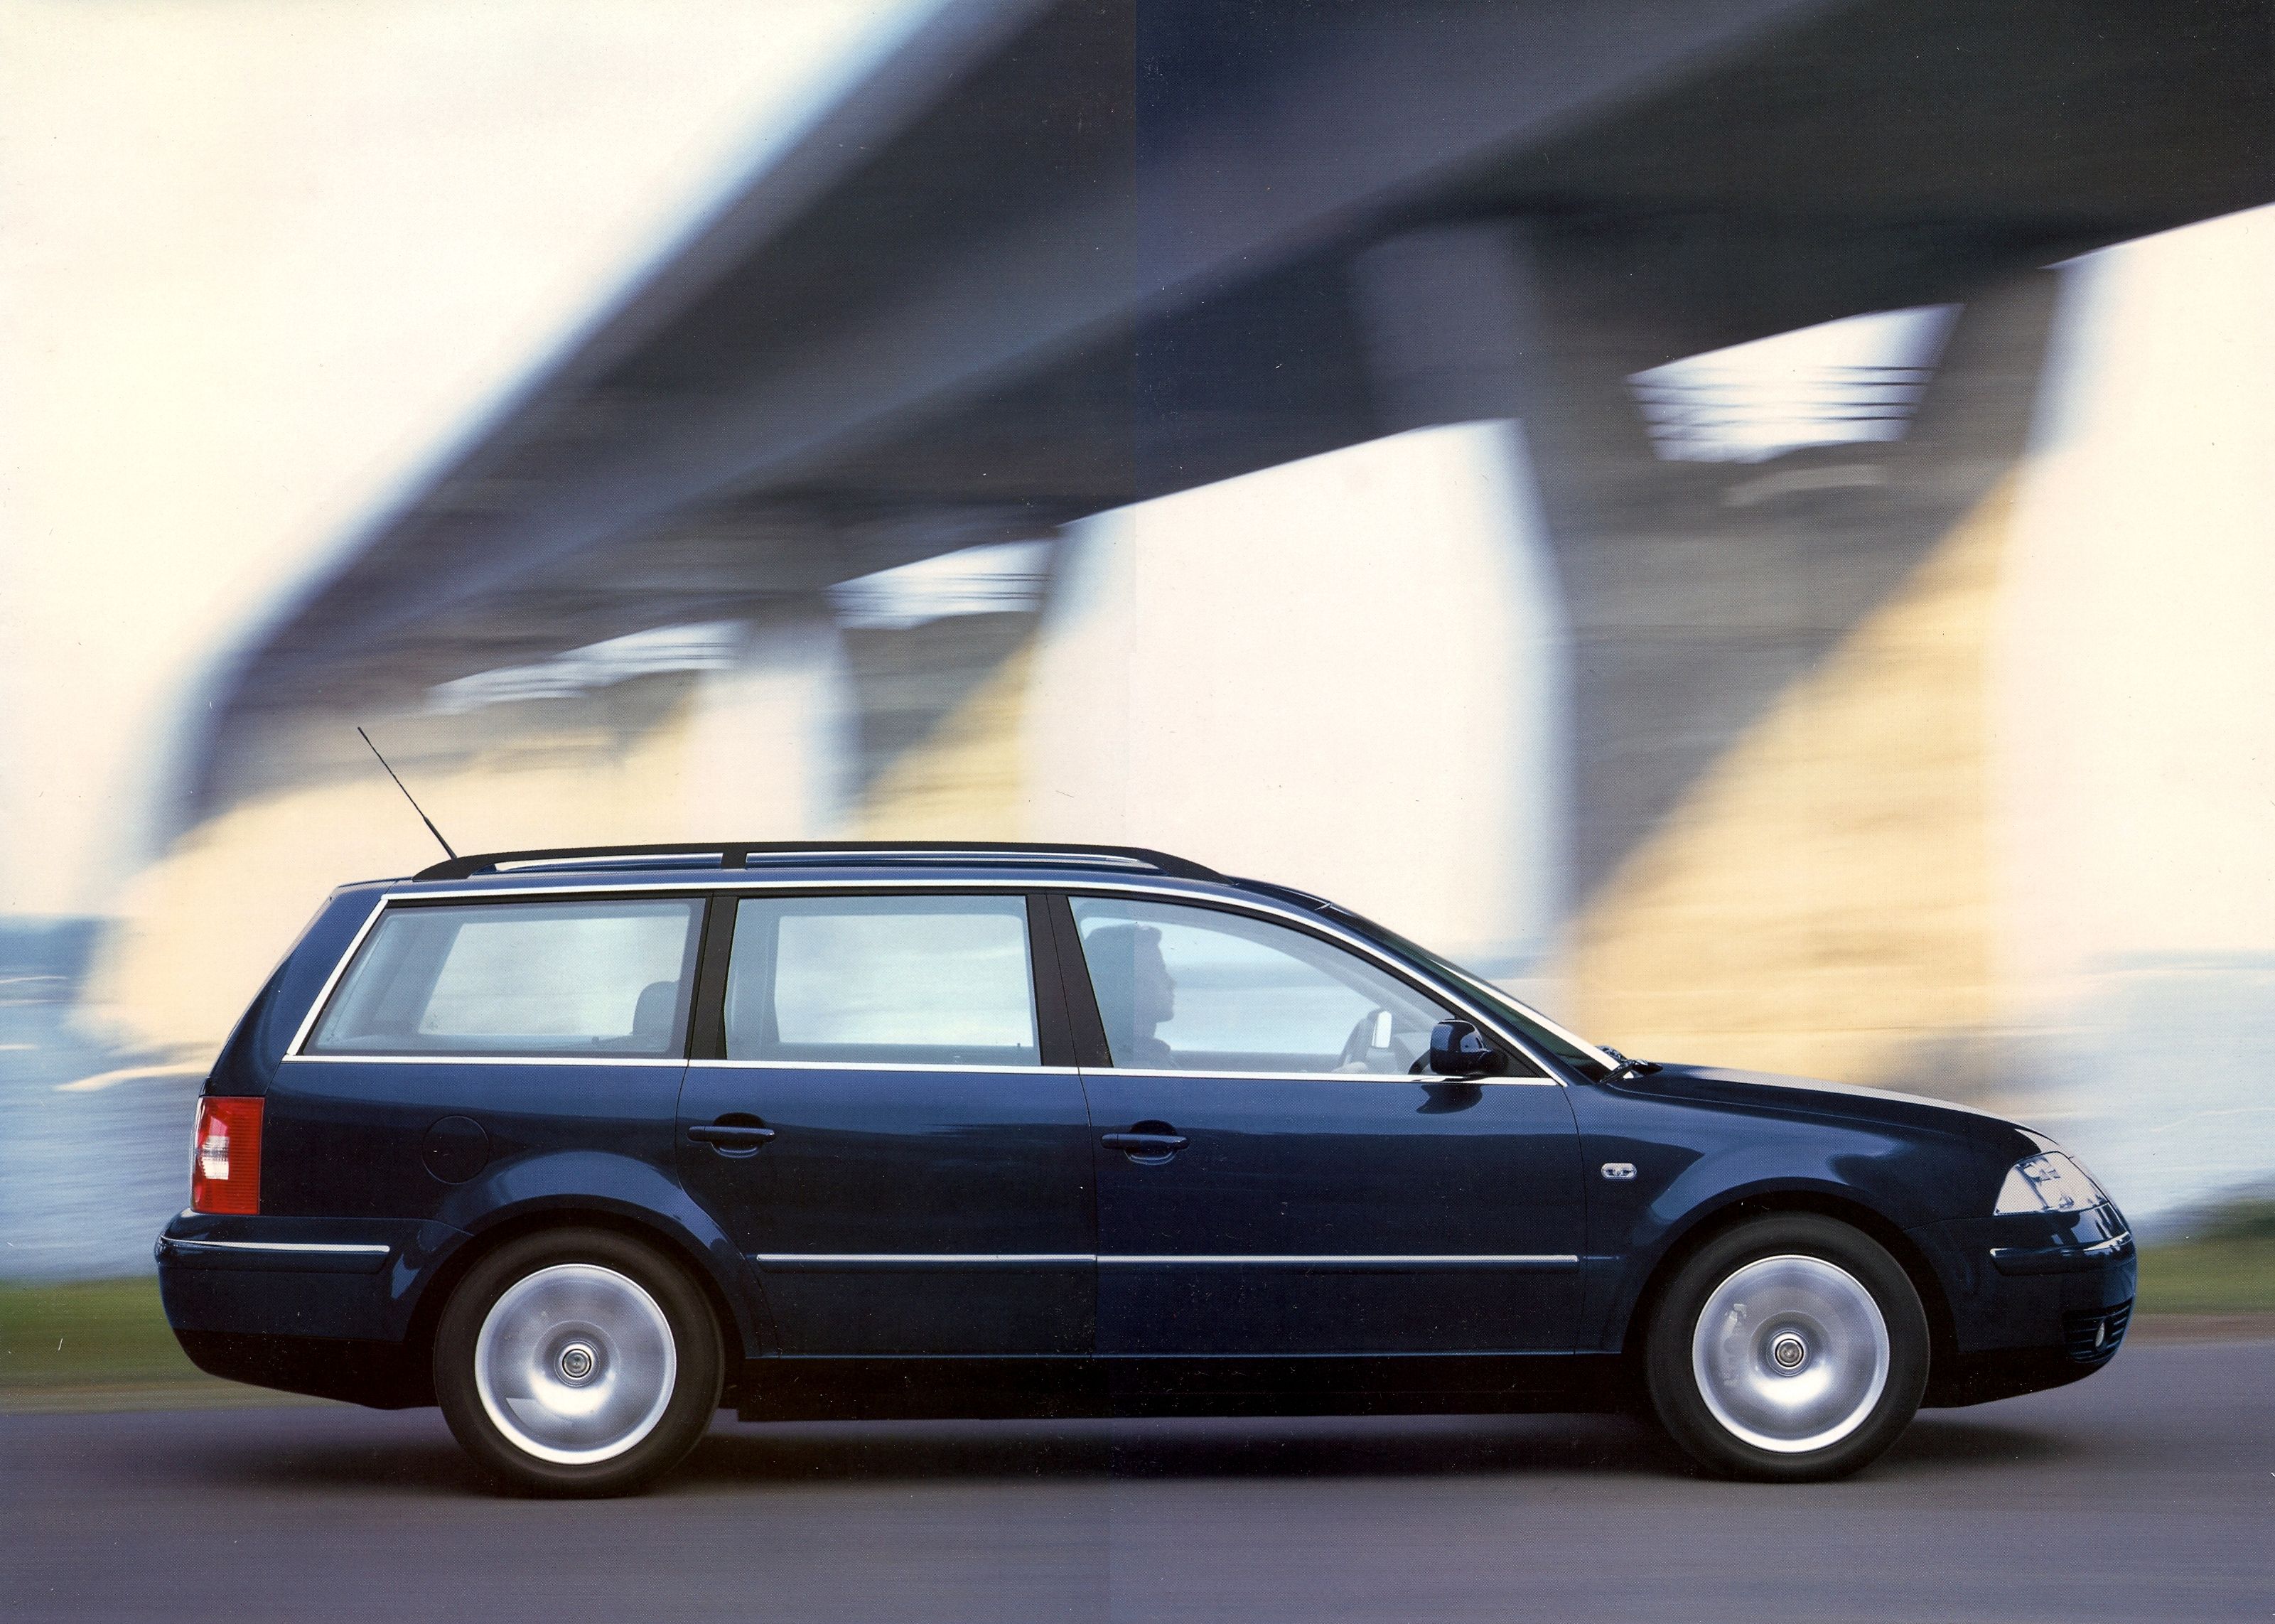 Volkswagen b5 универсал. Volkswagen Passat универсал 2000. Volkswagen Passat b5 2005 универсал. VW Passat b5 Wagon. Фольксваген Пассат универсал 2005.